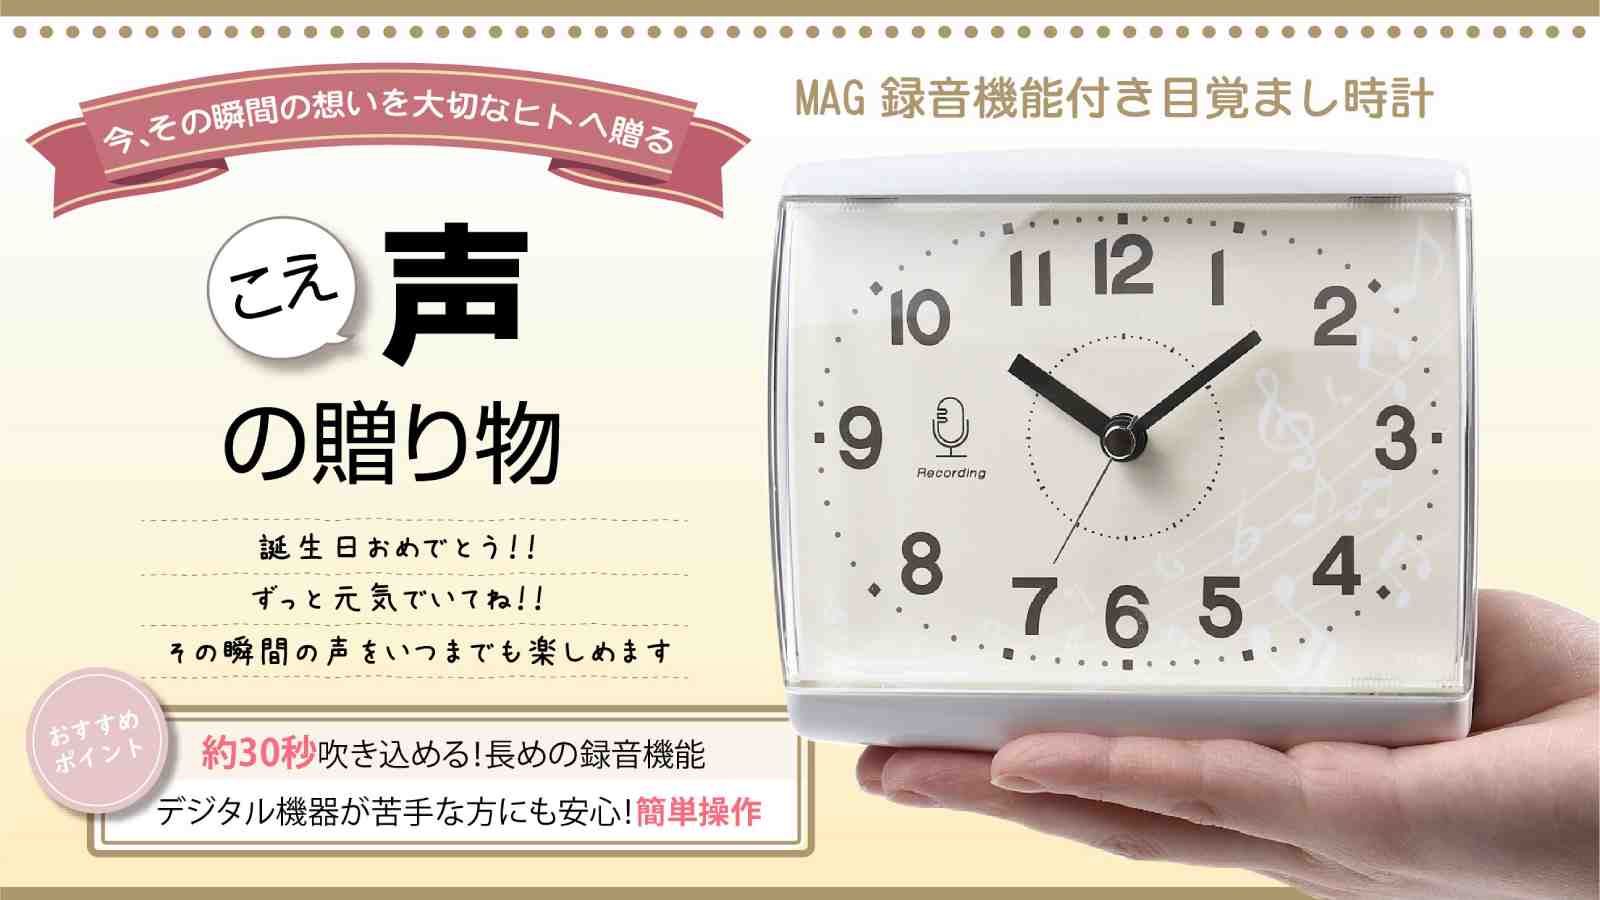 「こえ」が録音できる「MAG録音機能付き目覚まし時計」をMakuake(マクアケ)にて7月13日本日より先行予約販売開始しました。